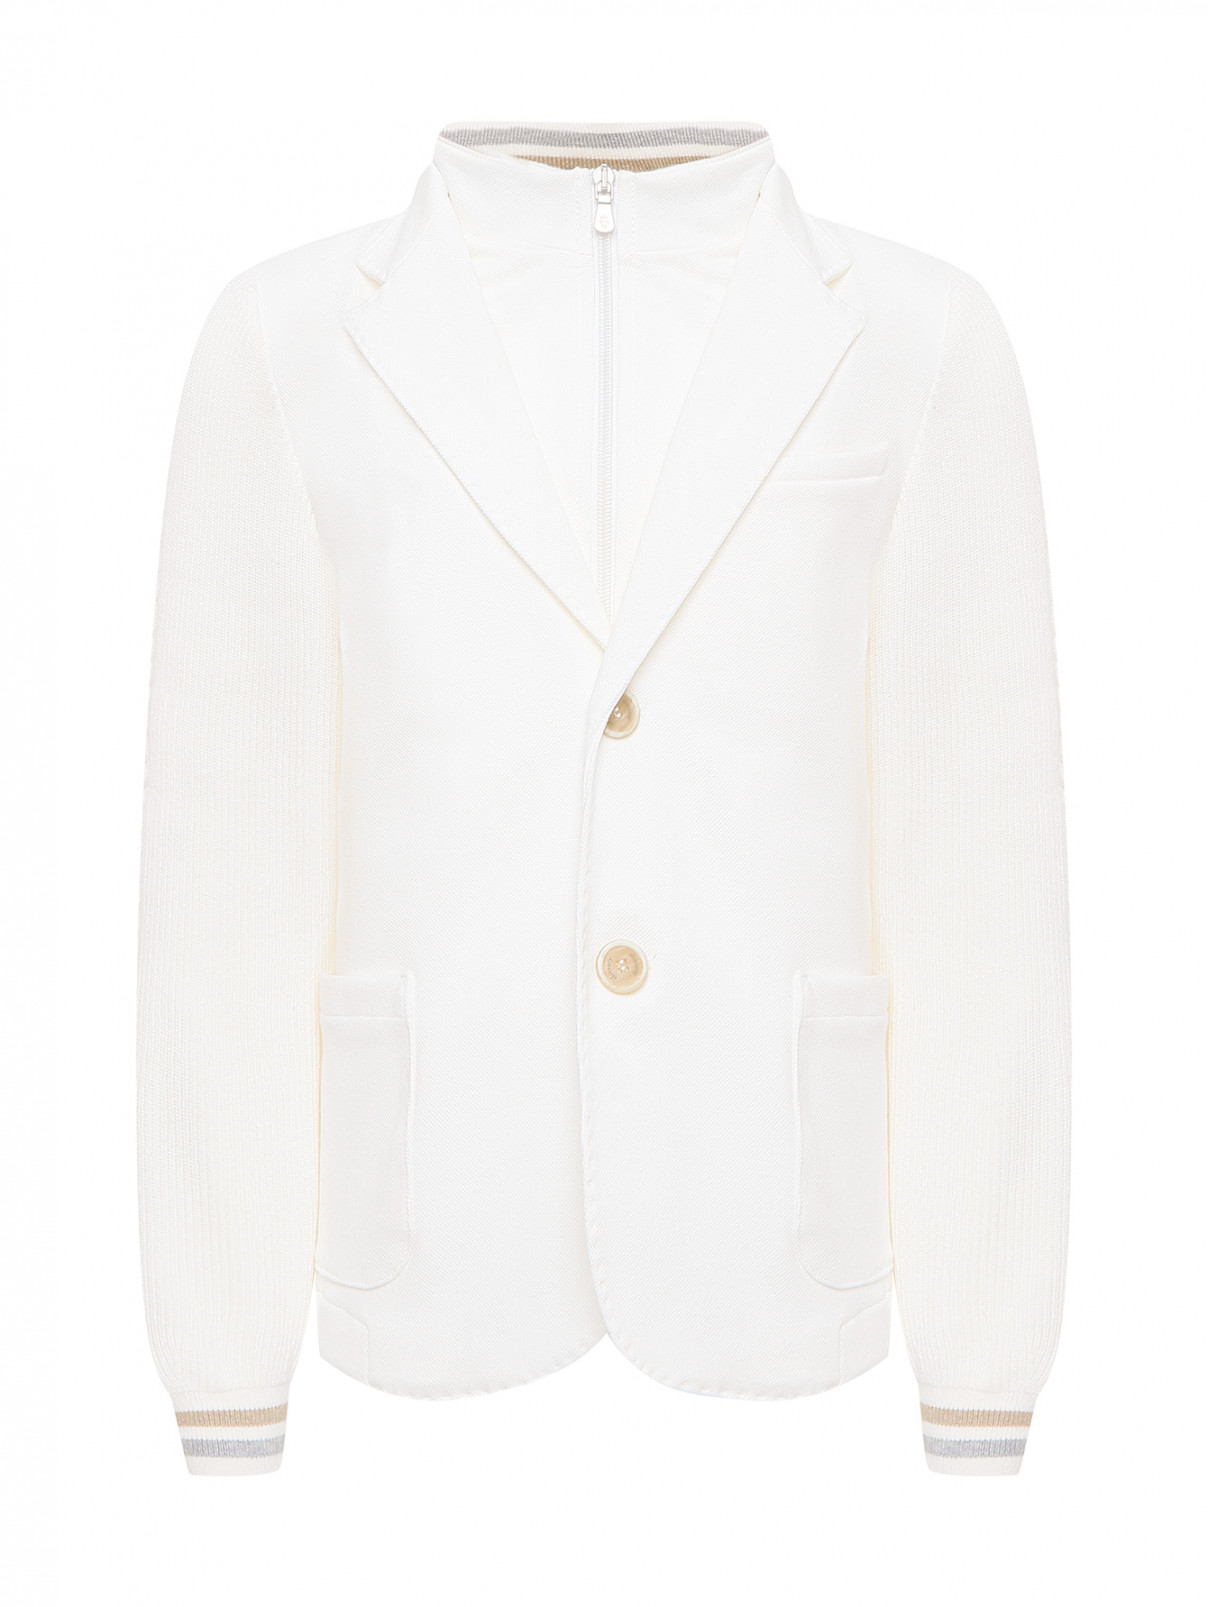 Пиджак на молнии и пуговицах Eleventy  –  Общий вид  – Цвет:  Белый